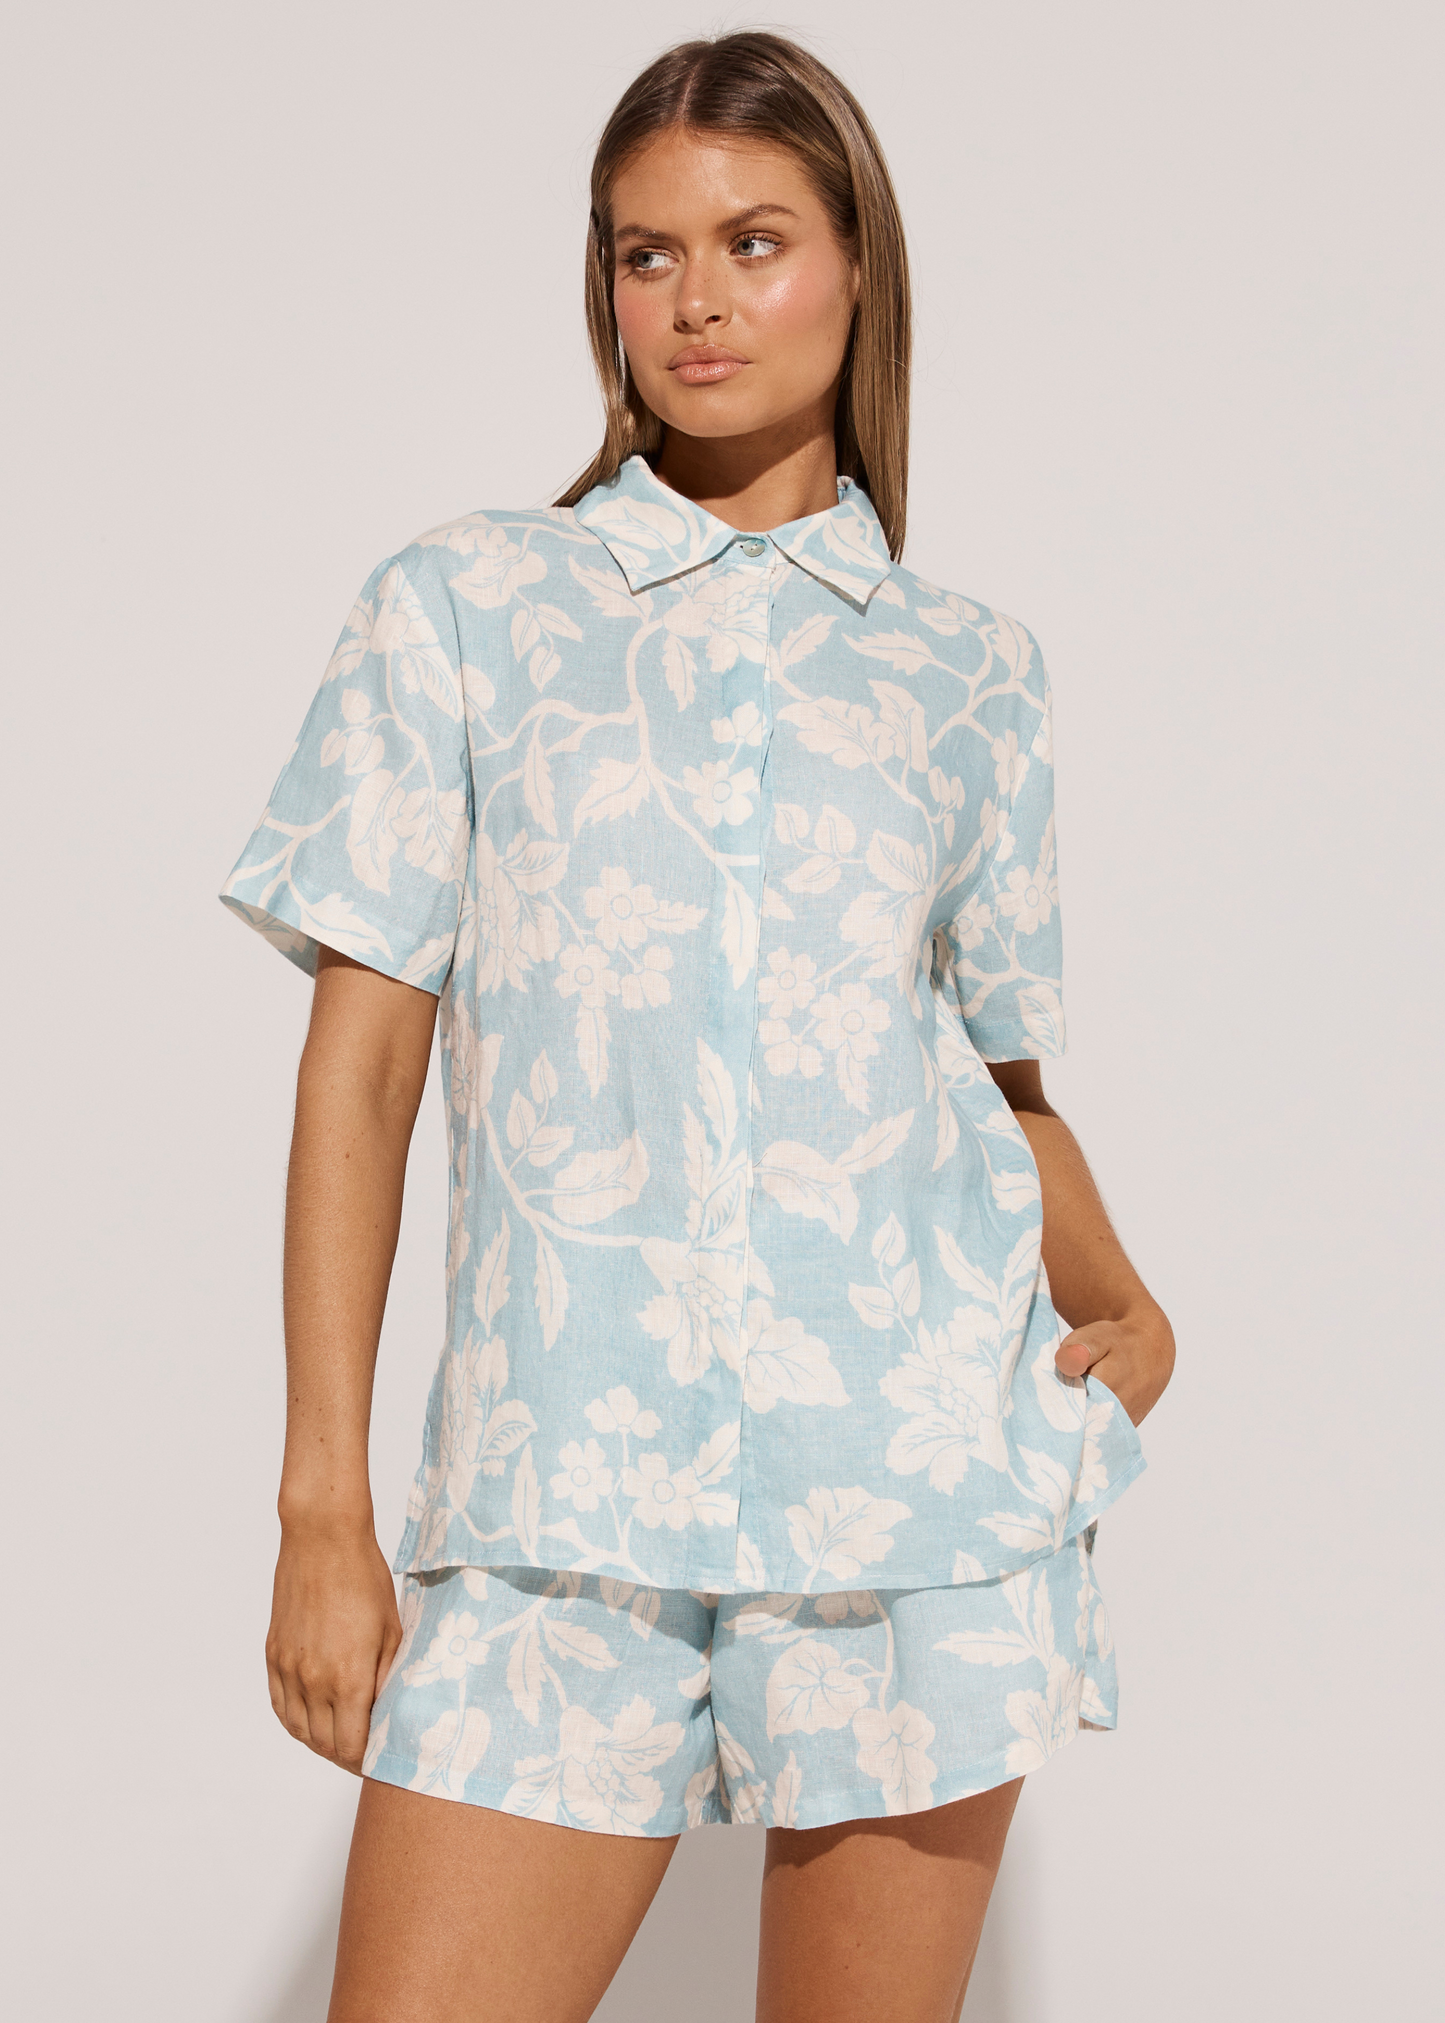 Honolulu Slim Shirt - Seamist